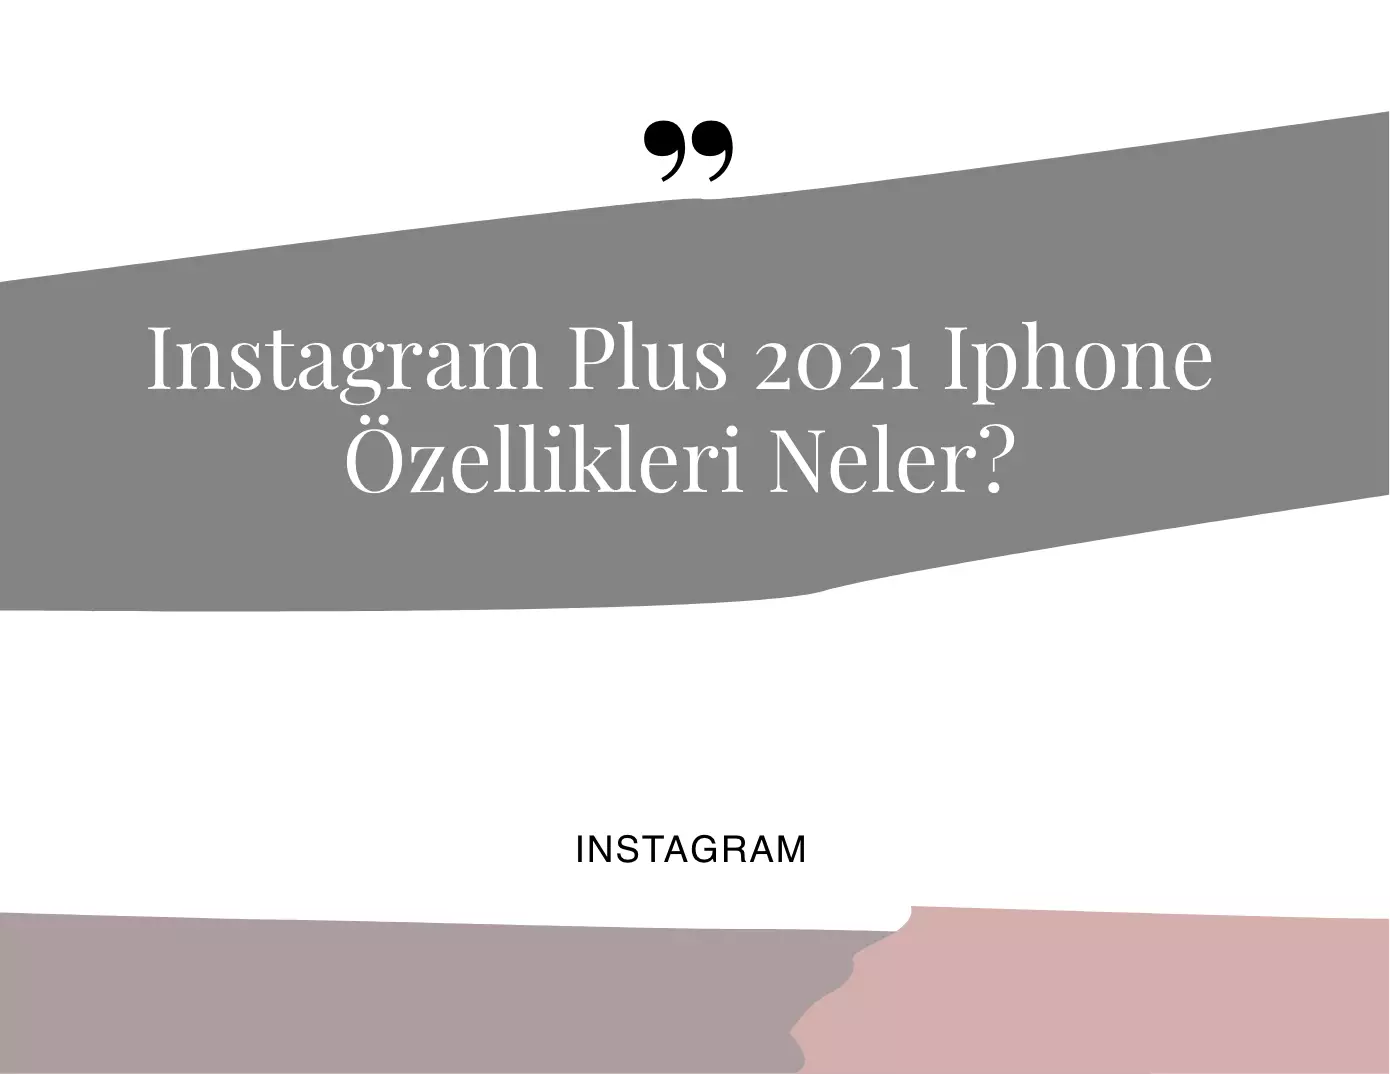 İnstagram Plus 2021 Iphone Özellikleri Neler?